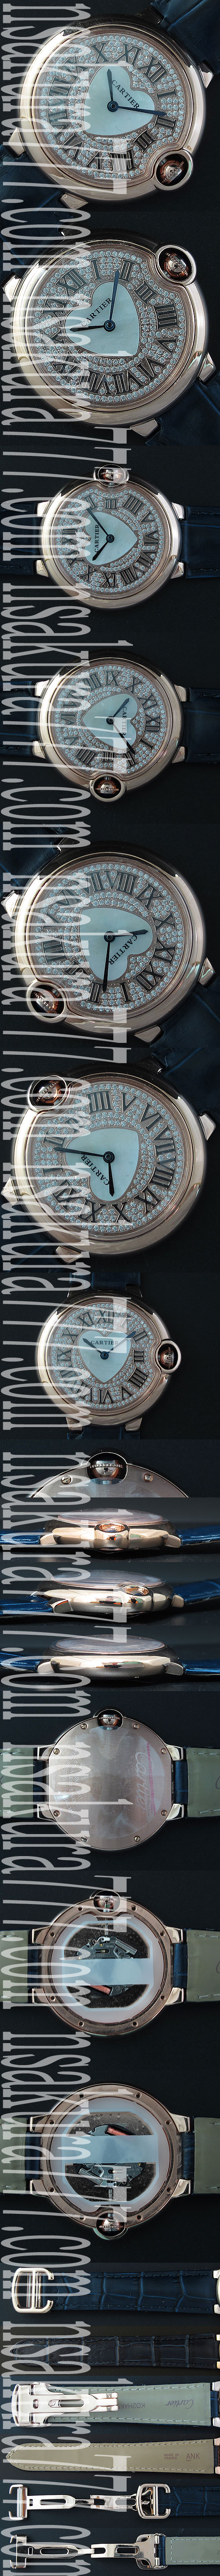 薄型腕時計カルティエ バロンブルー (オレンジバンド全面ダイヤ文字盤)